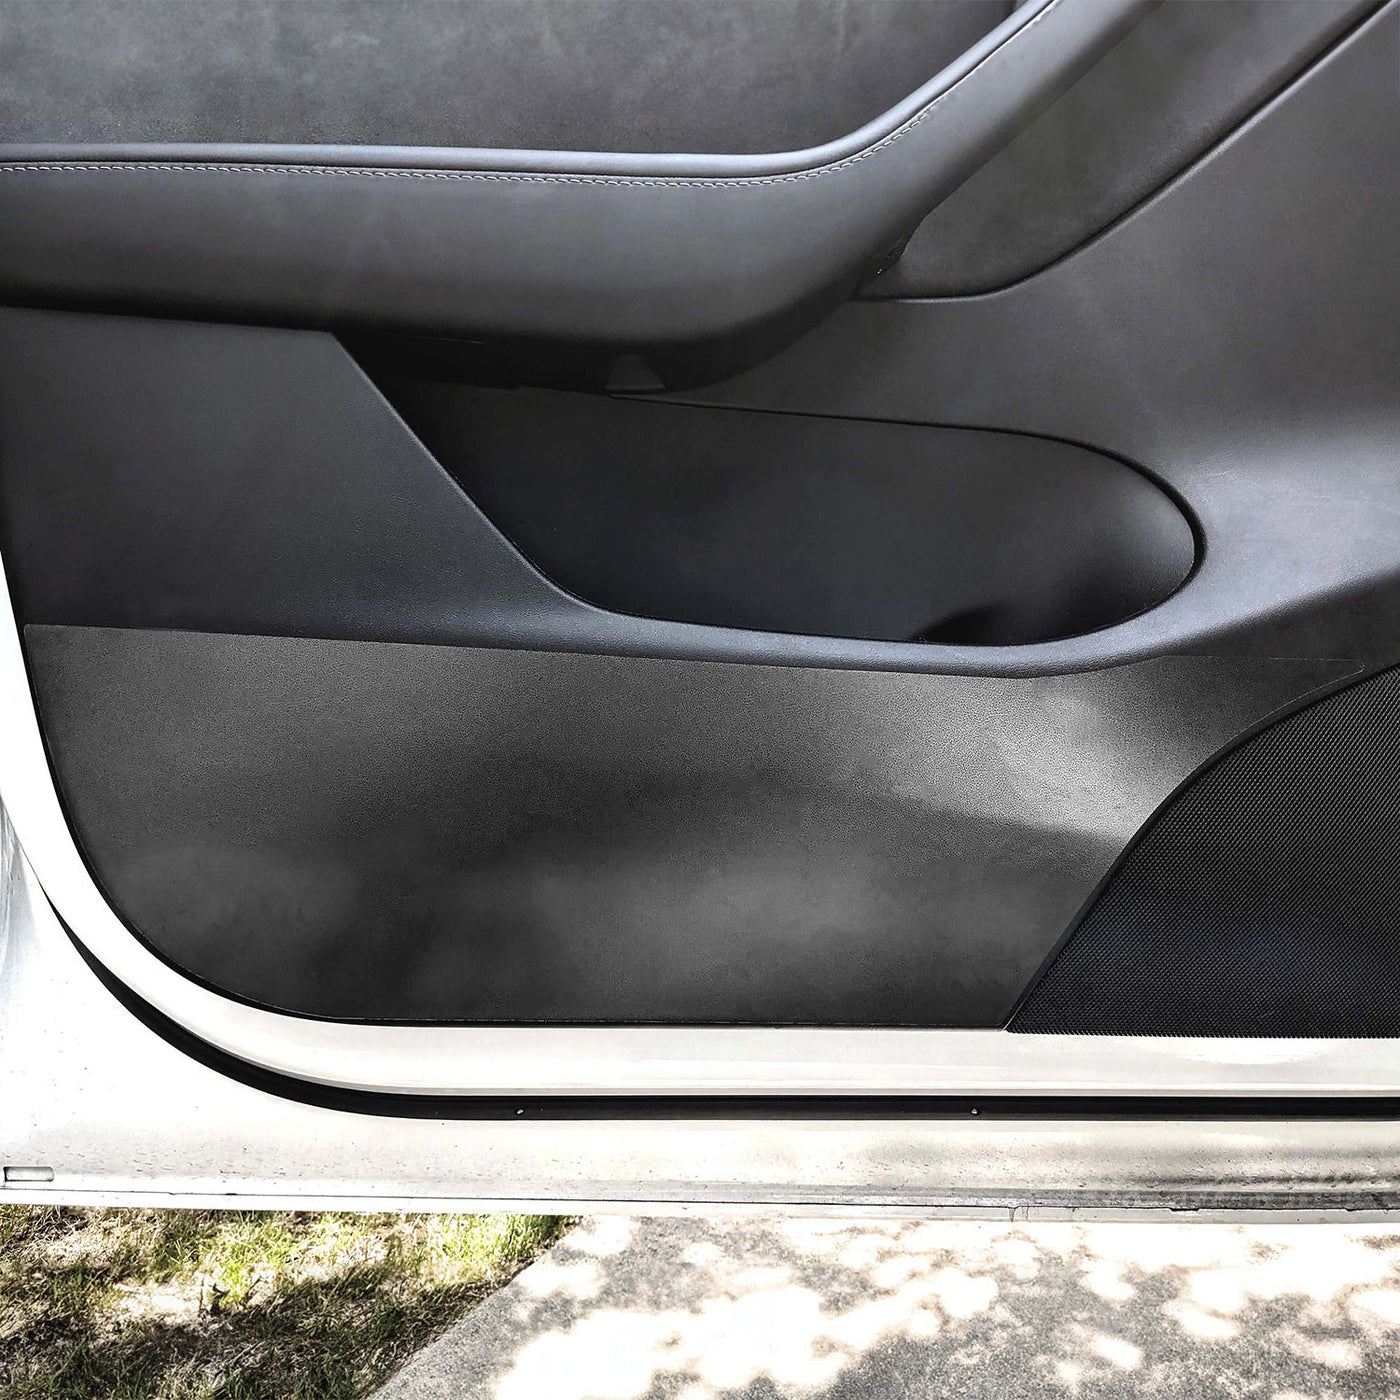 New ModelY Car Door Handle For Tesla Model 3 2023 Model Y